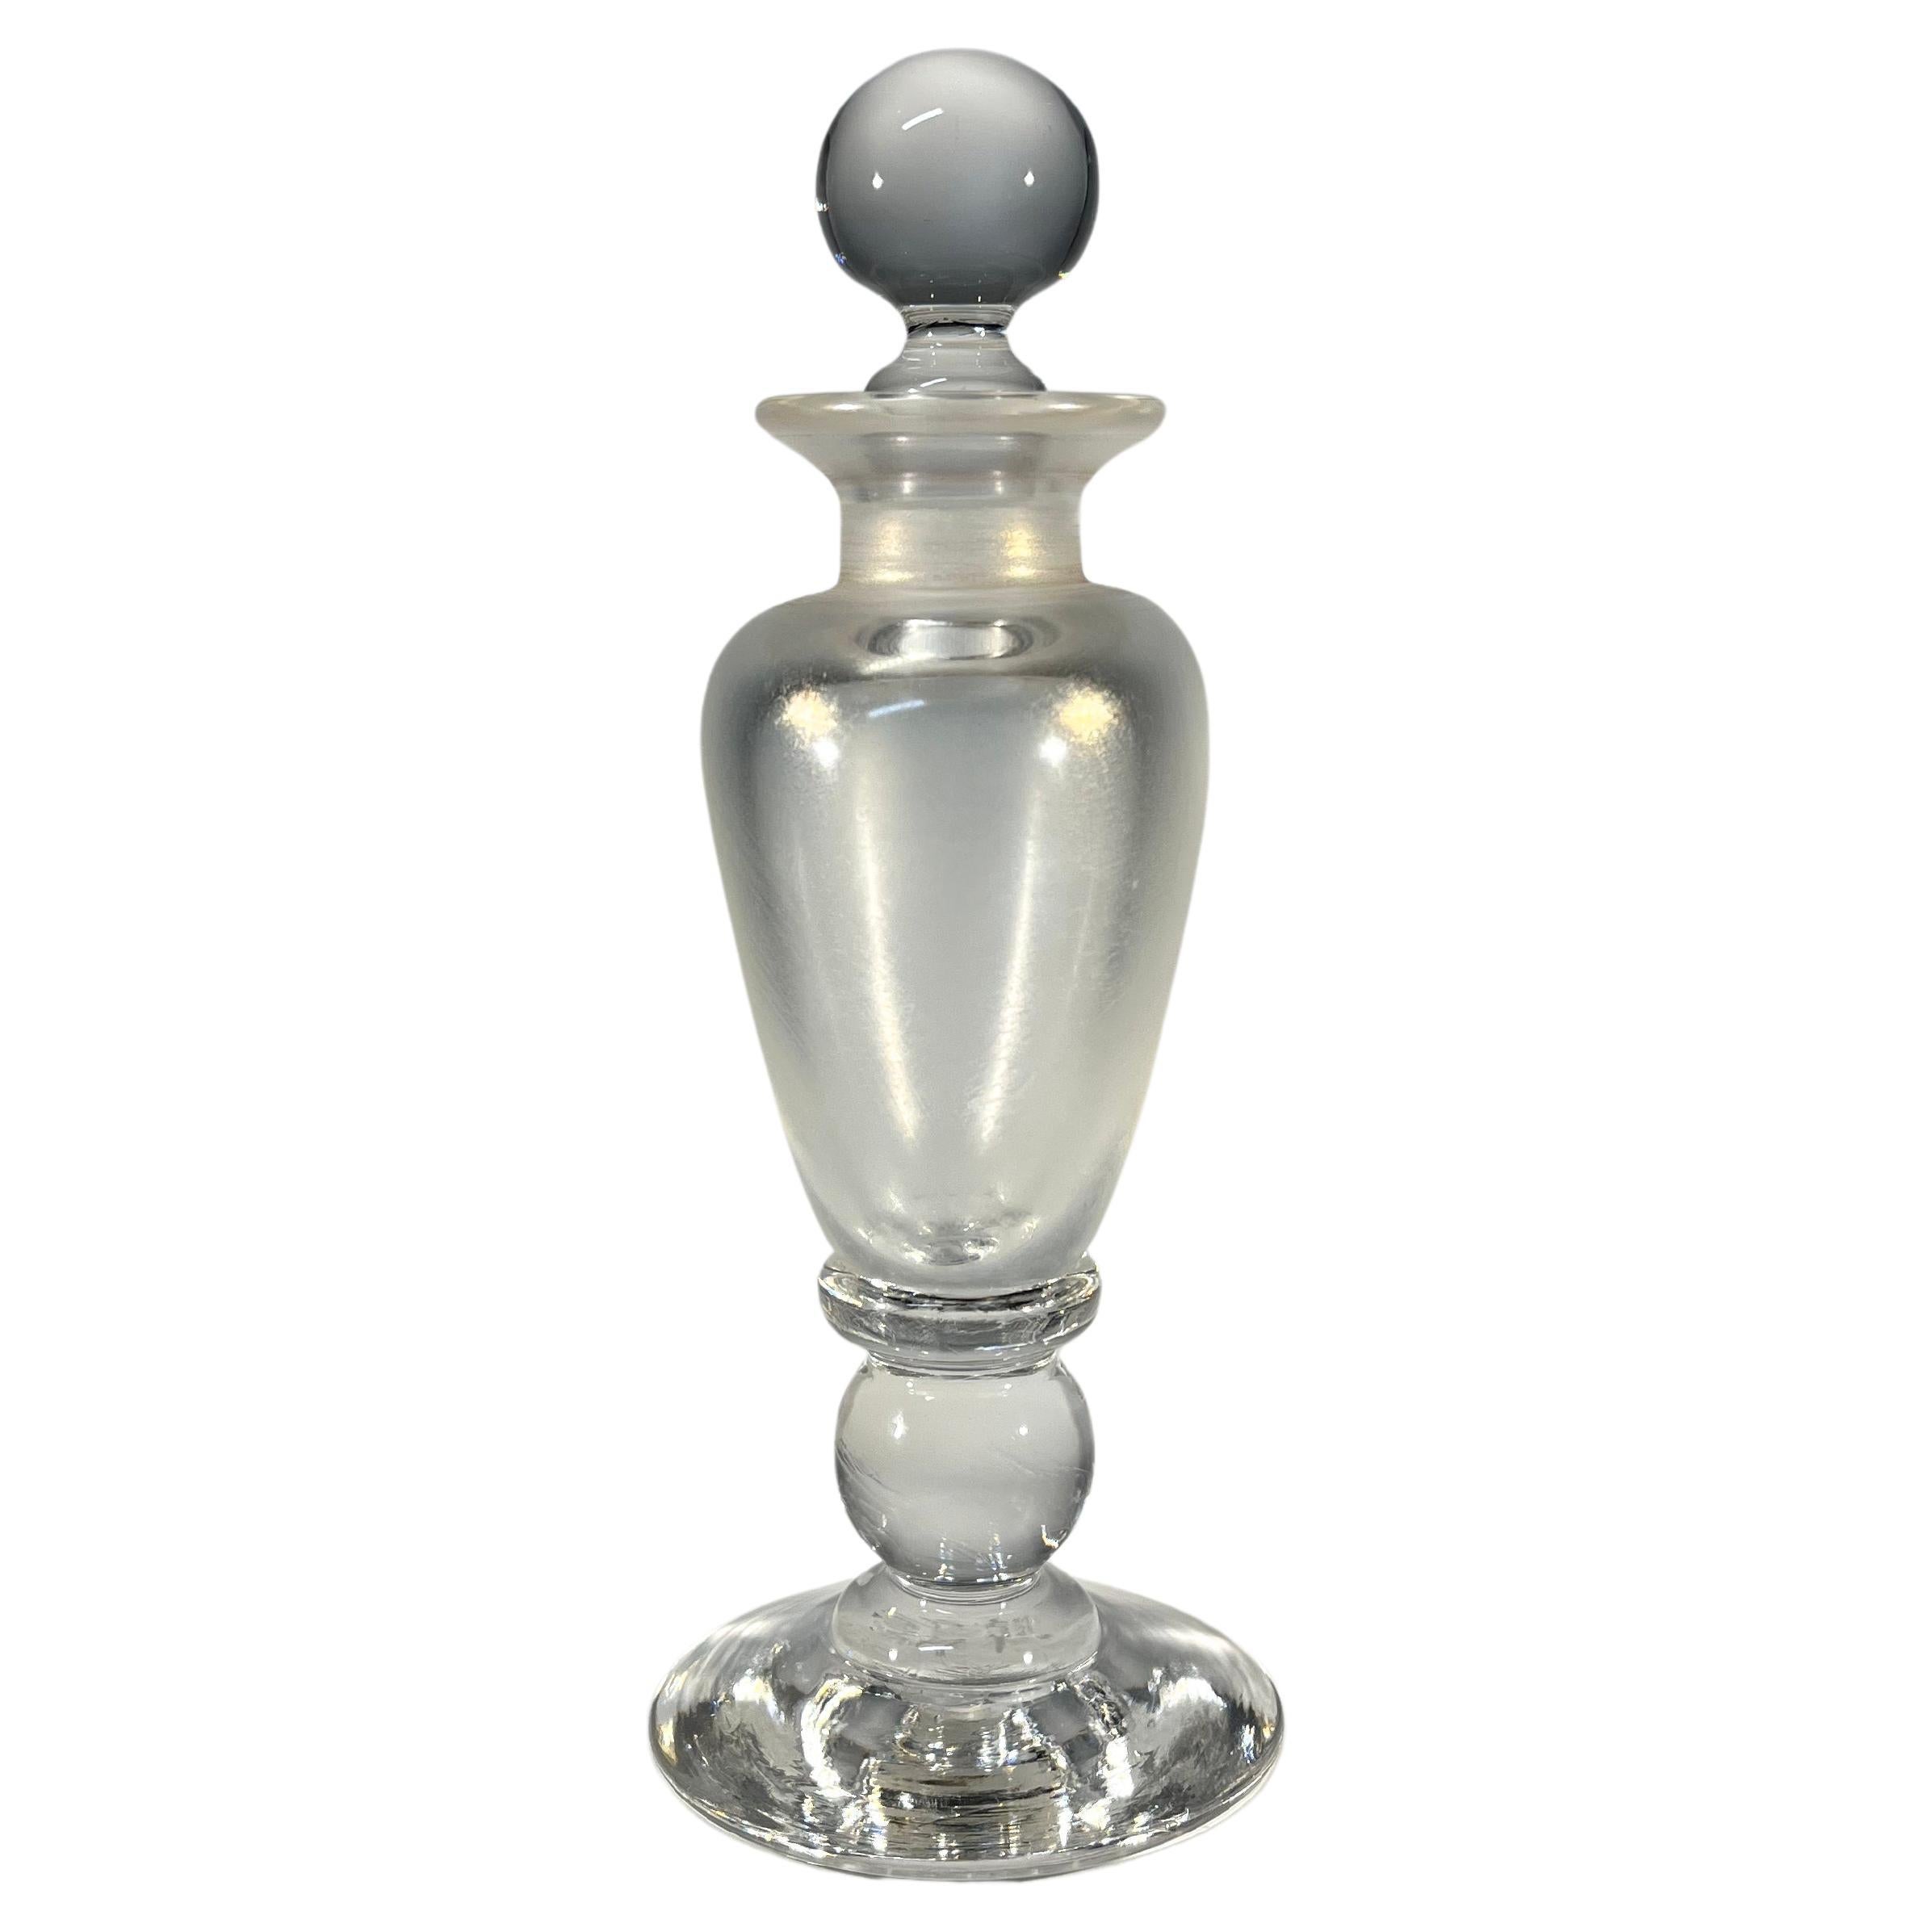 Bouteille de parfum en verre anglaise fabriquée à la main Pearlescent, David Wallace, années 1980